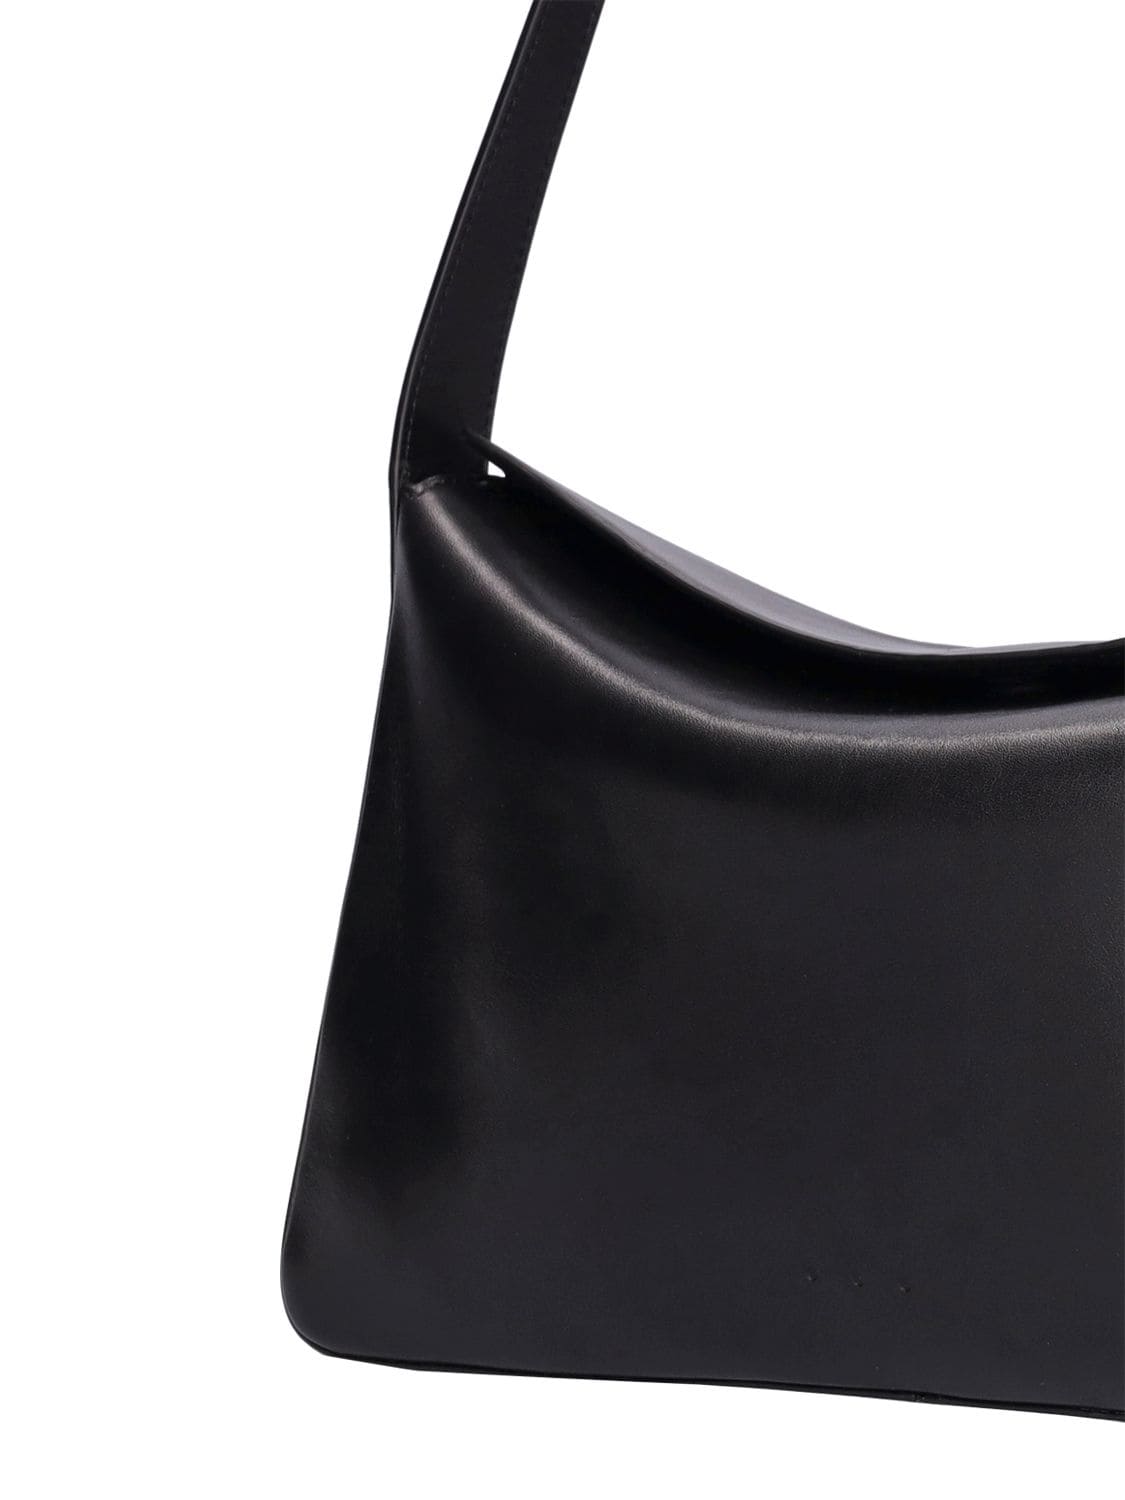 Aesther ekme 'soft baguette' shoulder bag available on SUGAR - 123175